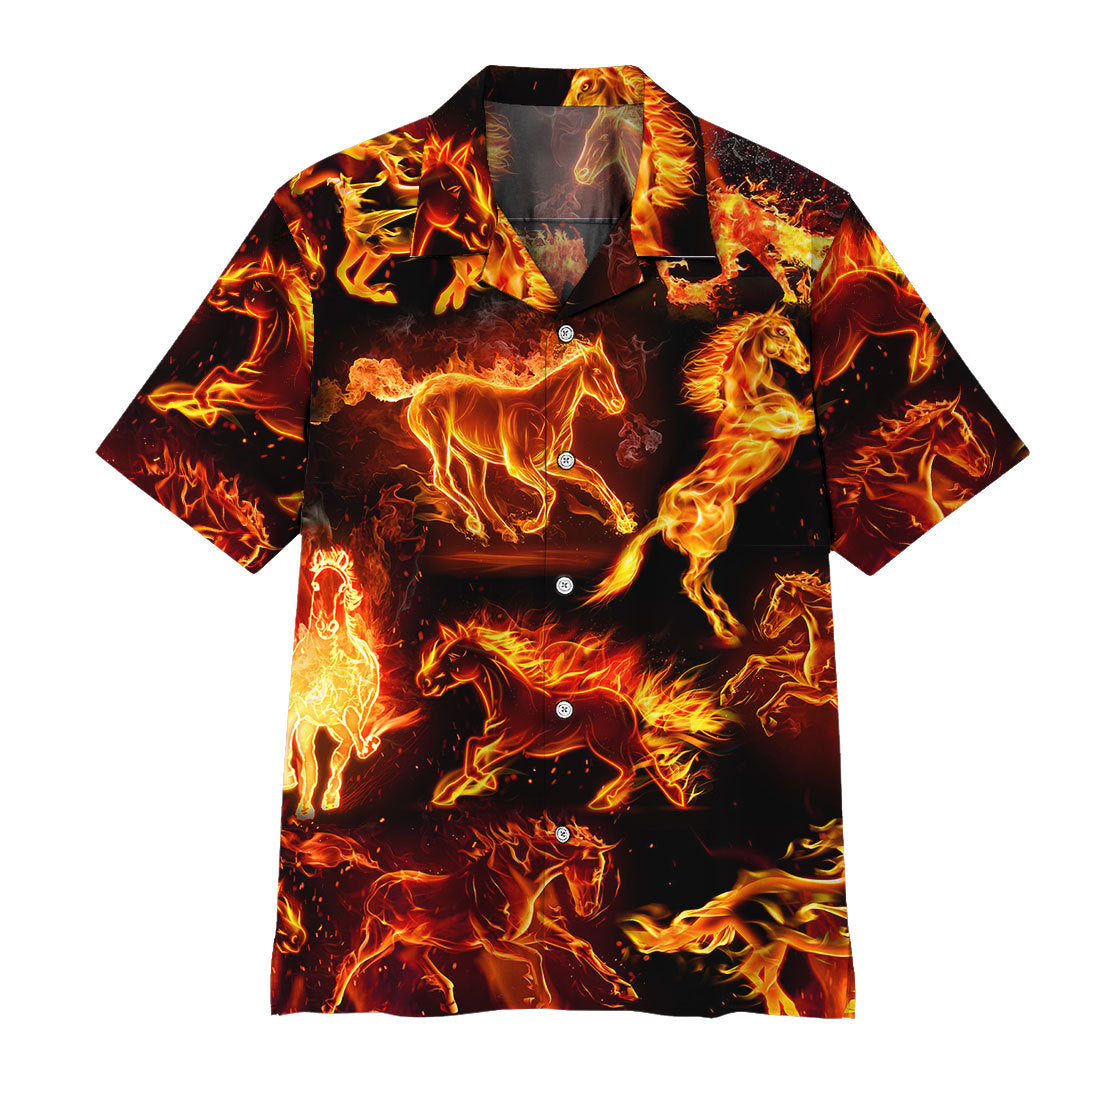 Gearhumans 3D Fire Horse Hawaii Shirt